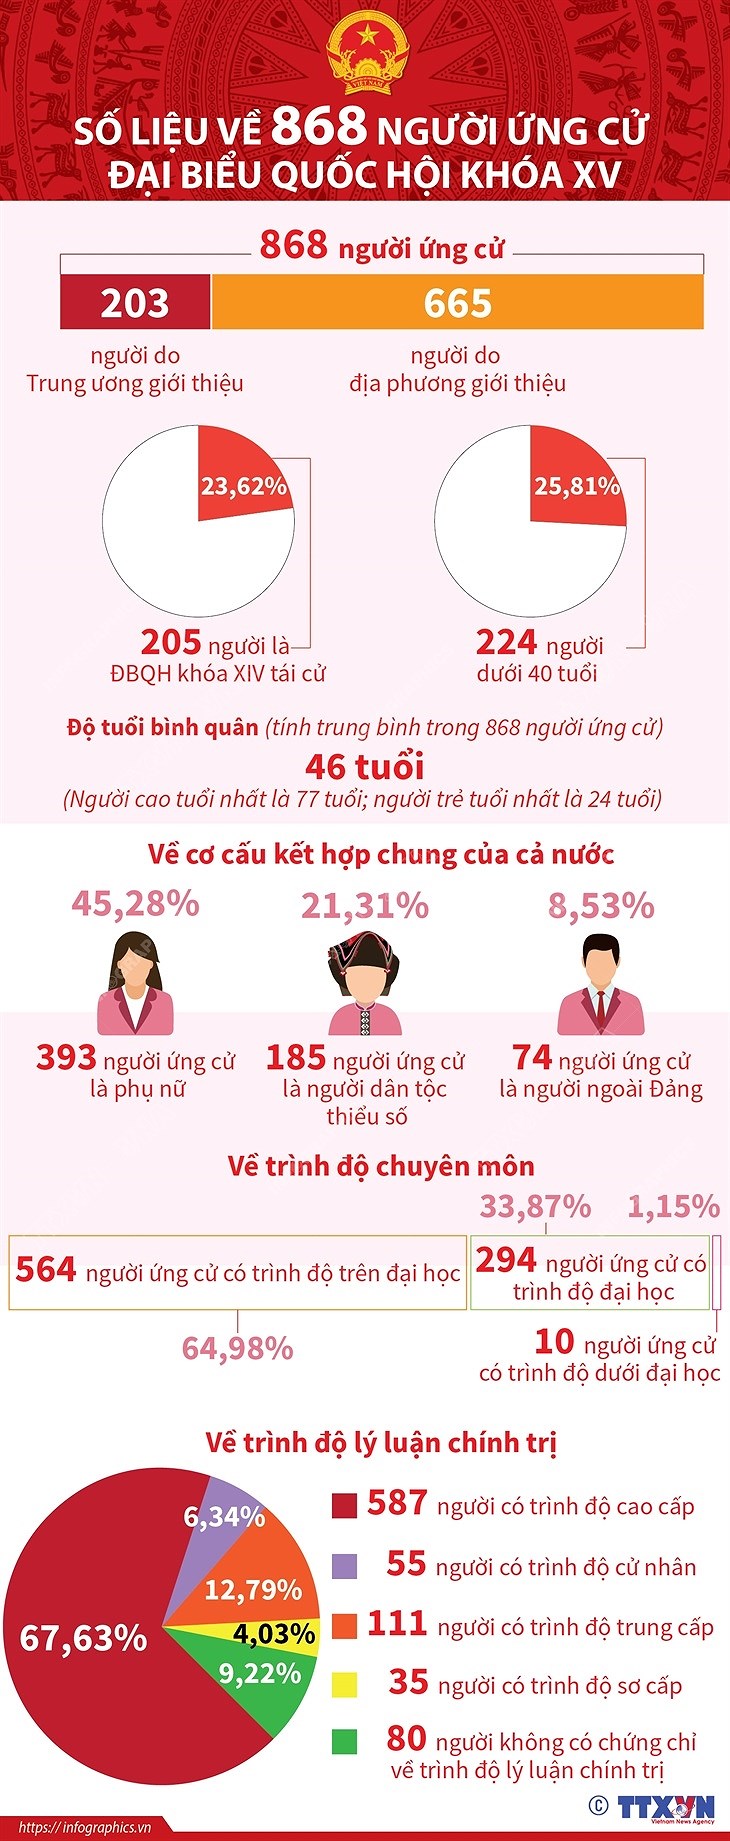 [Infographics] So lieu ve 868 nguoi ung cu dai bieu Quoc hoi khoa XV hinh anh 1